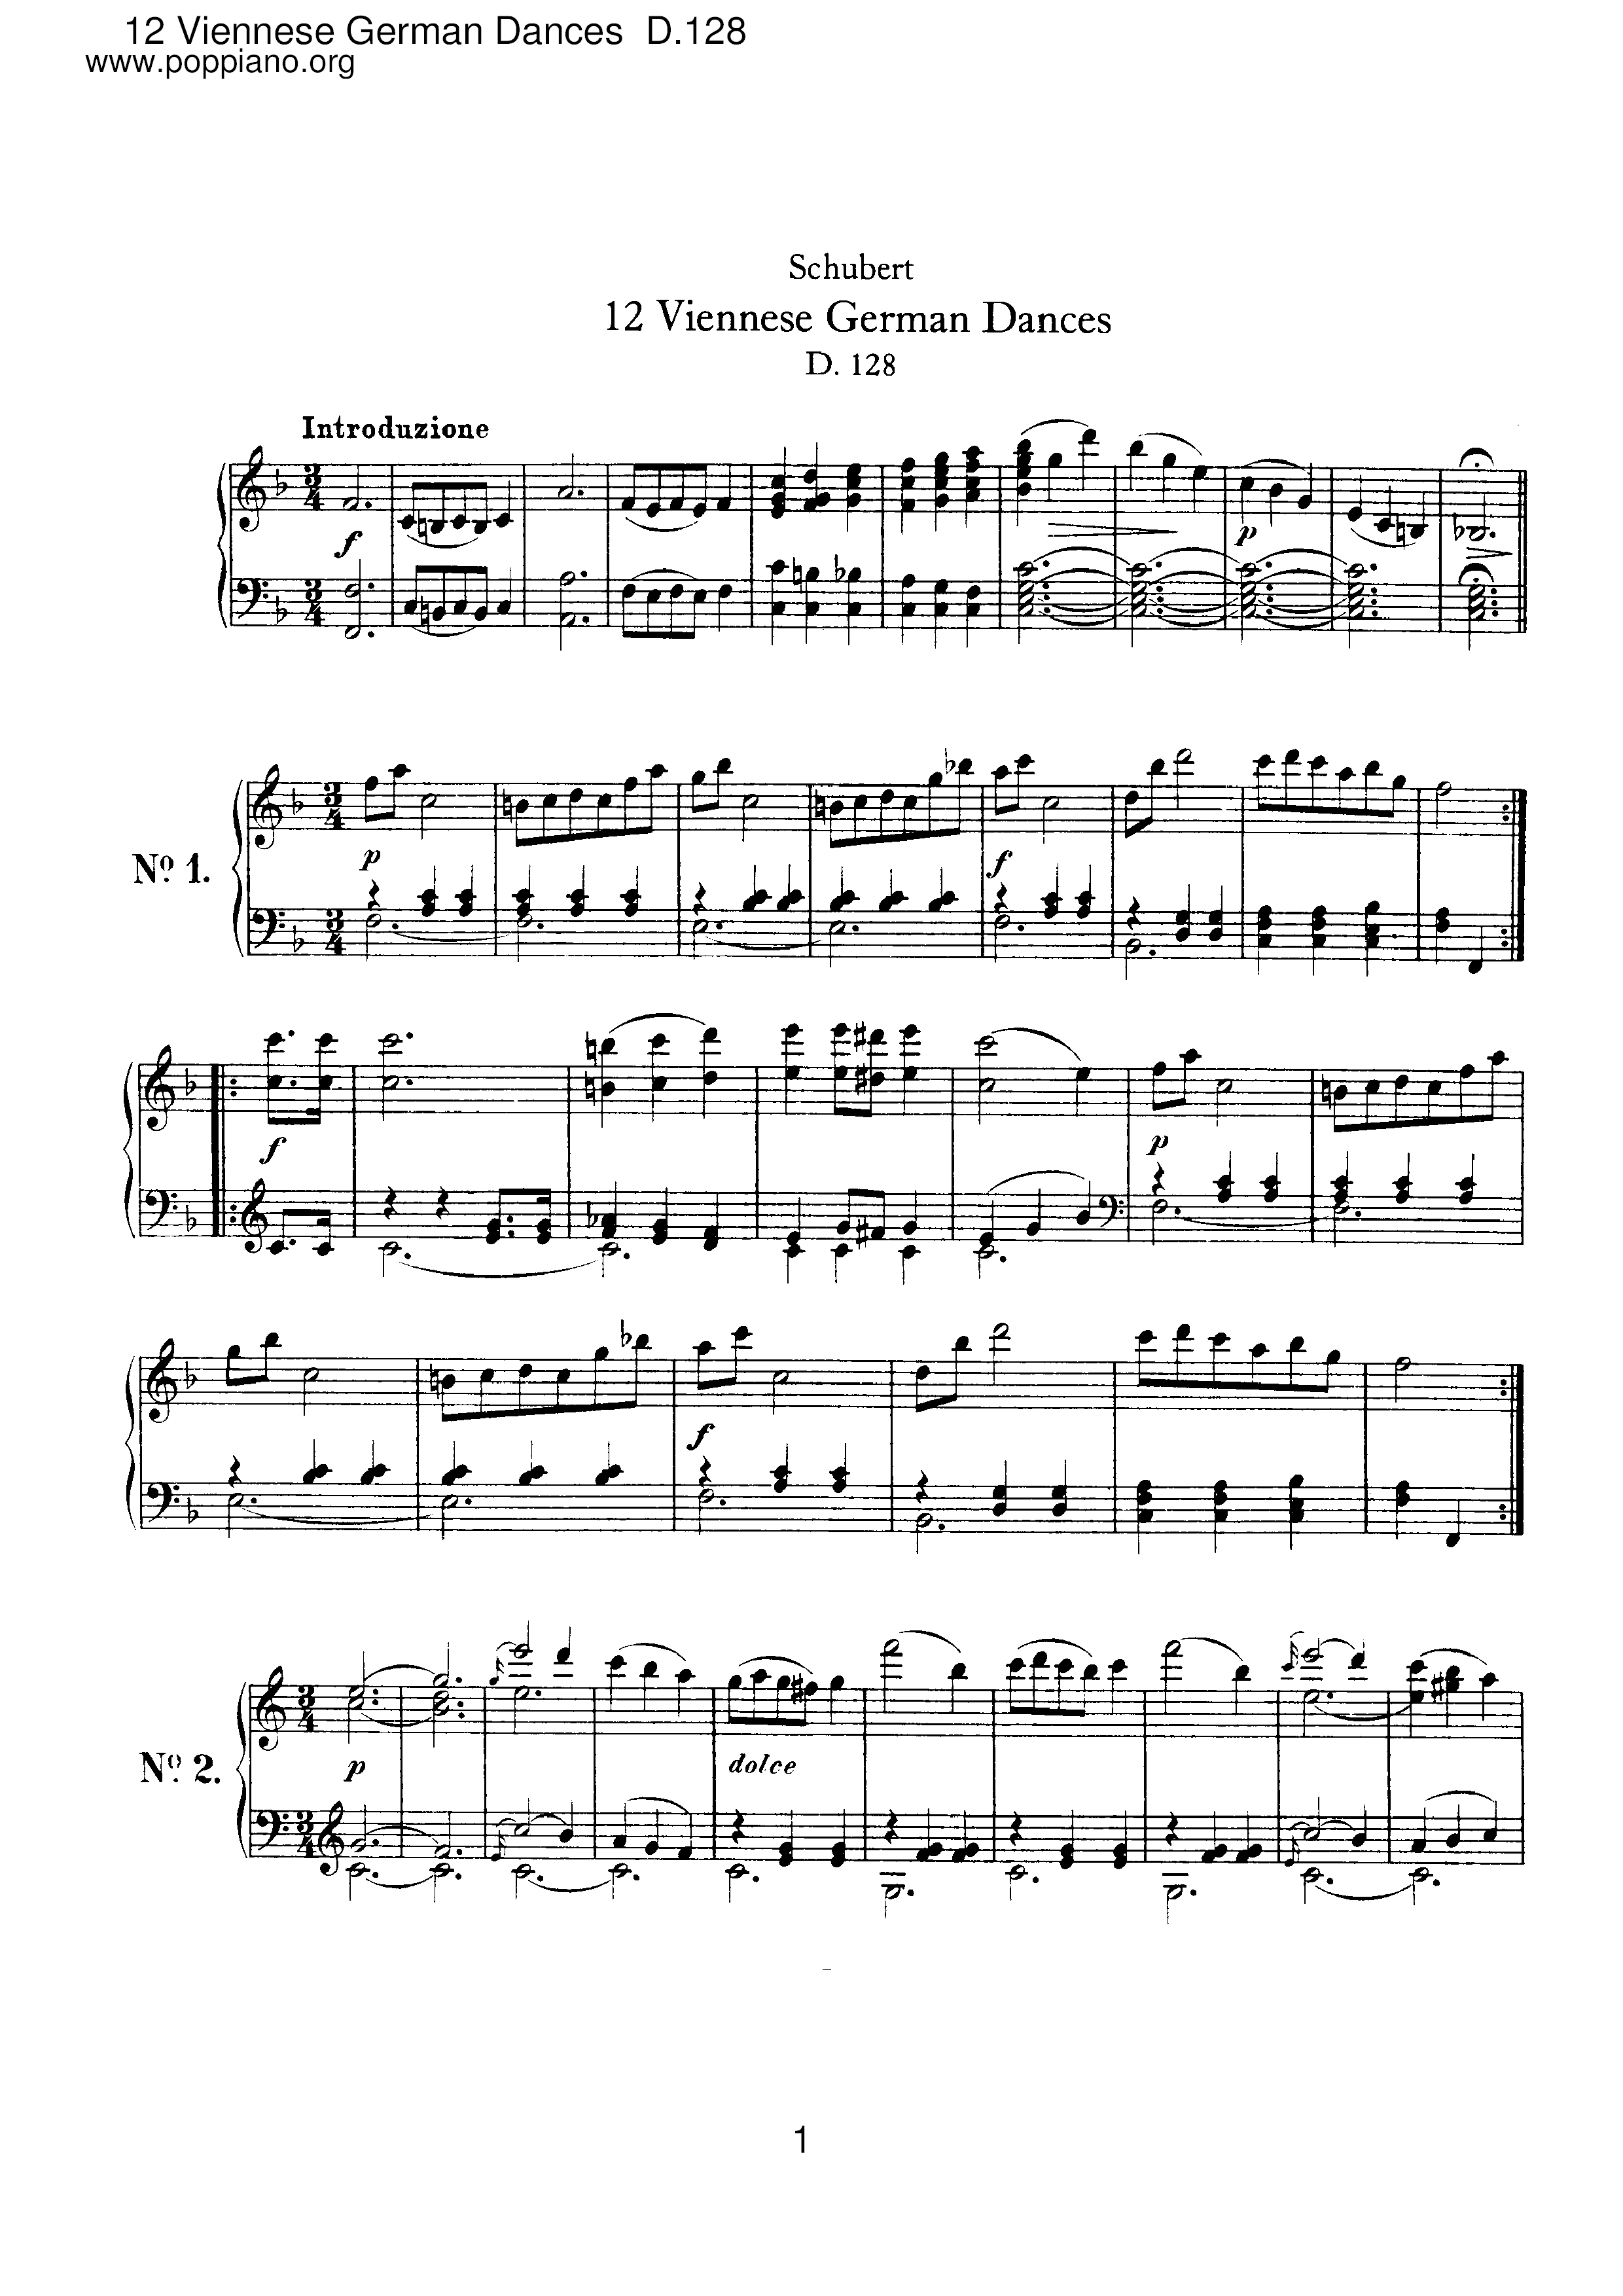 12 Viennese German Dances, D.128 Score